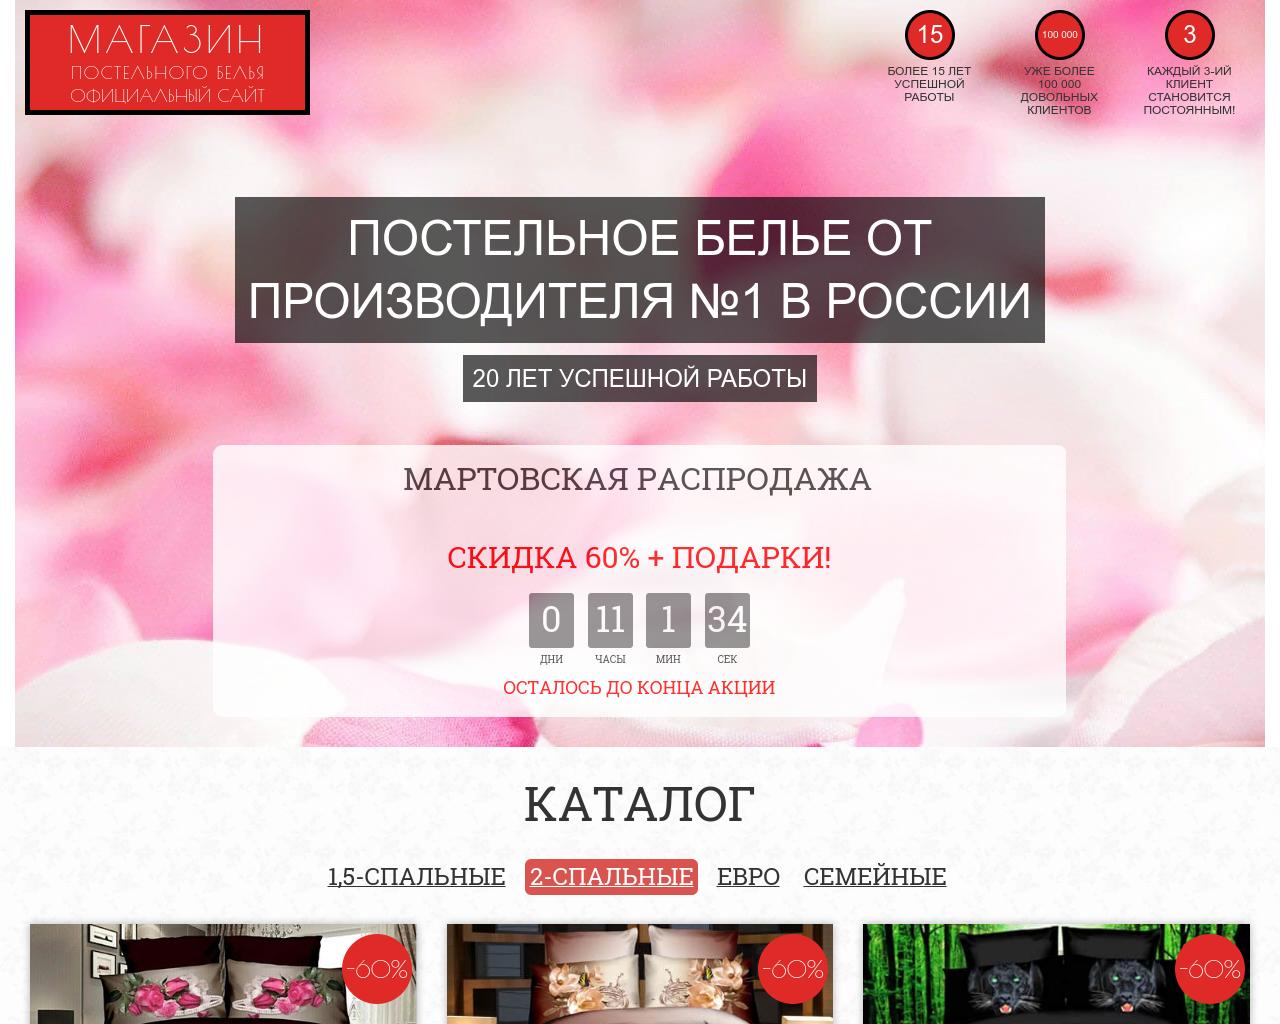 Изображение сайта postel-sale.ru в разрешении 1280x1024